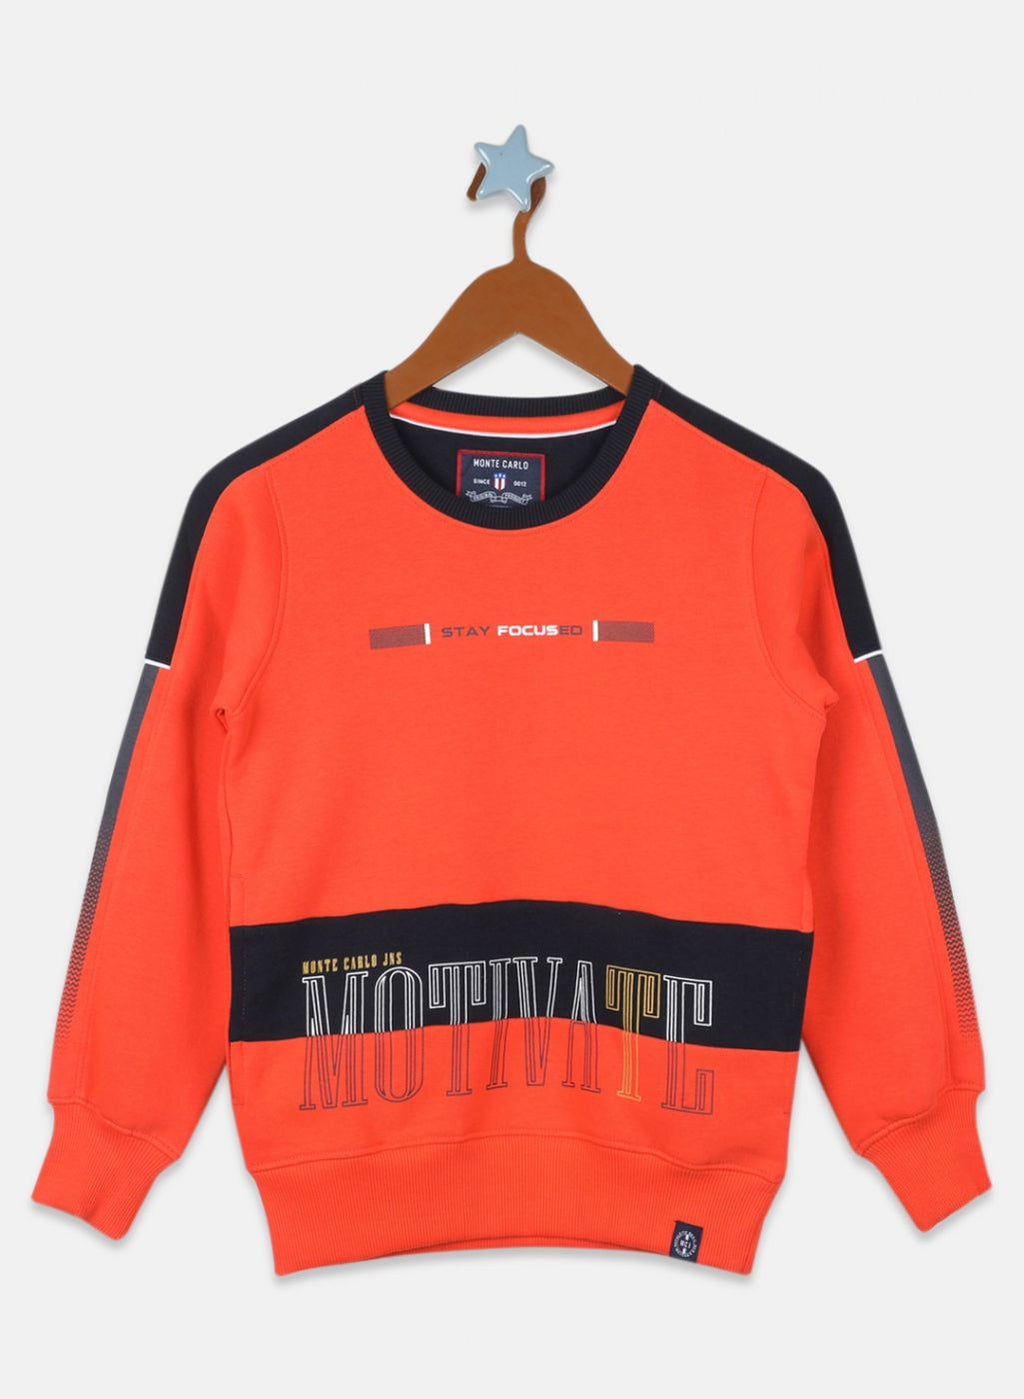 Buy Boys Orange Printed Sweatshirt Online in India - Monte Carlo